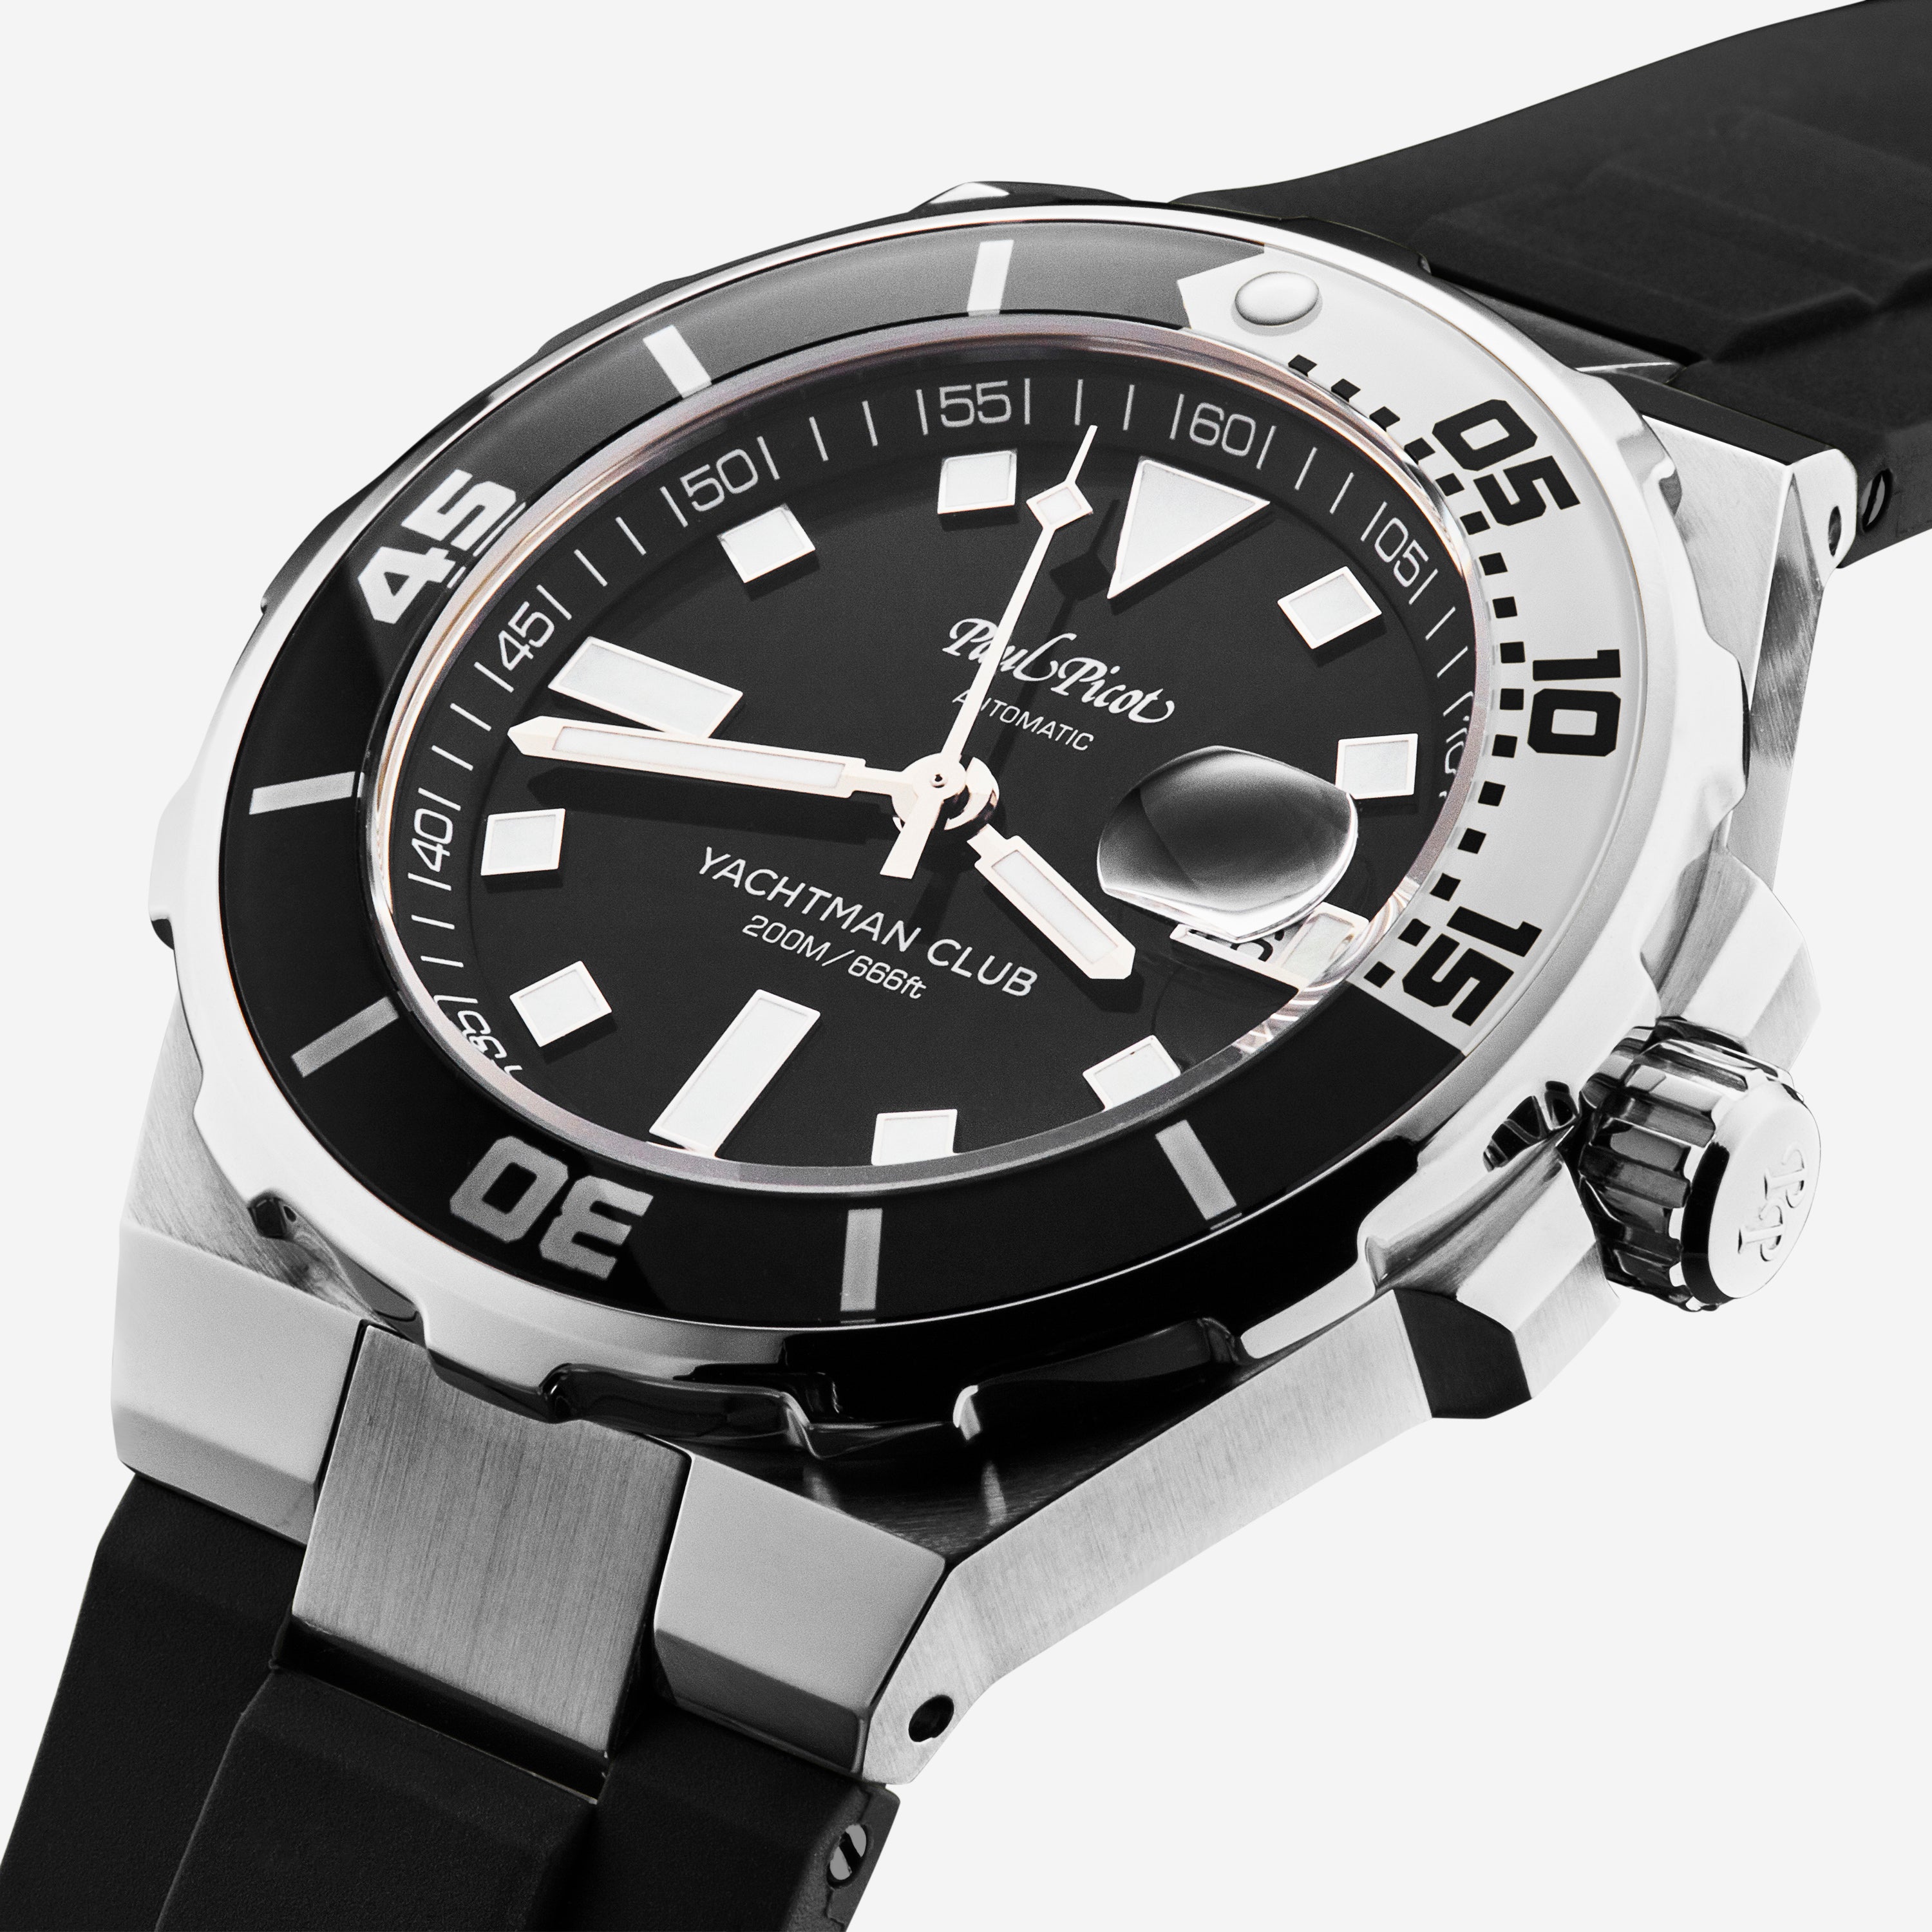 Paul Picot Yachtman Club Black Dial Men's Automatic Watch P1251NBL.SG.3614CM001 - THE SOLIST